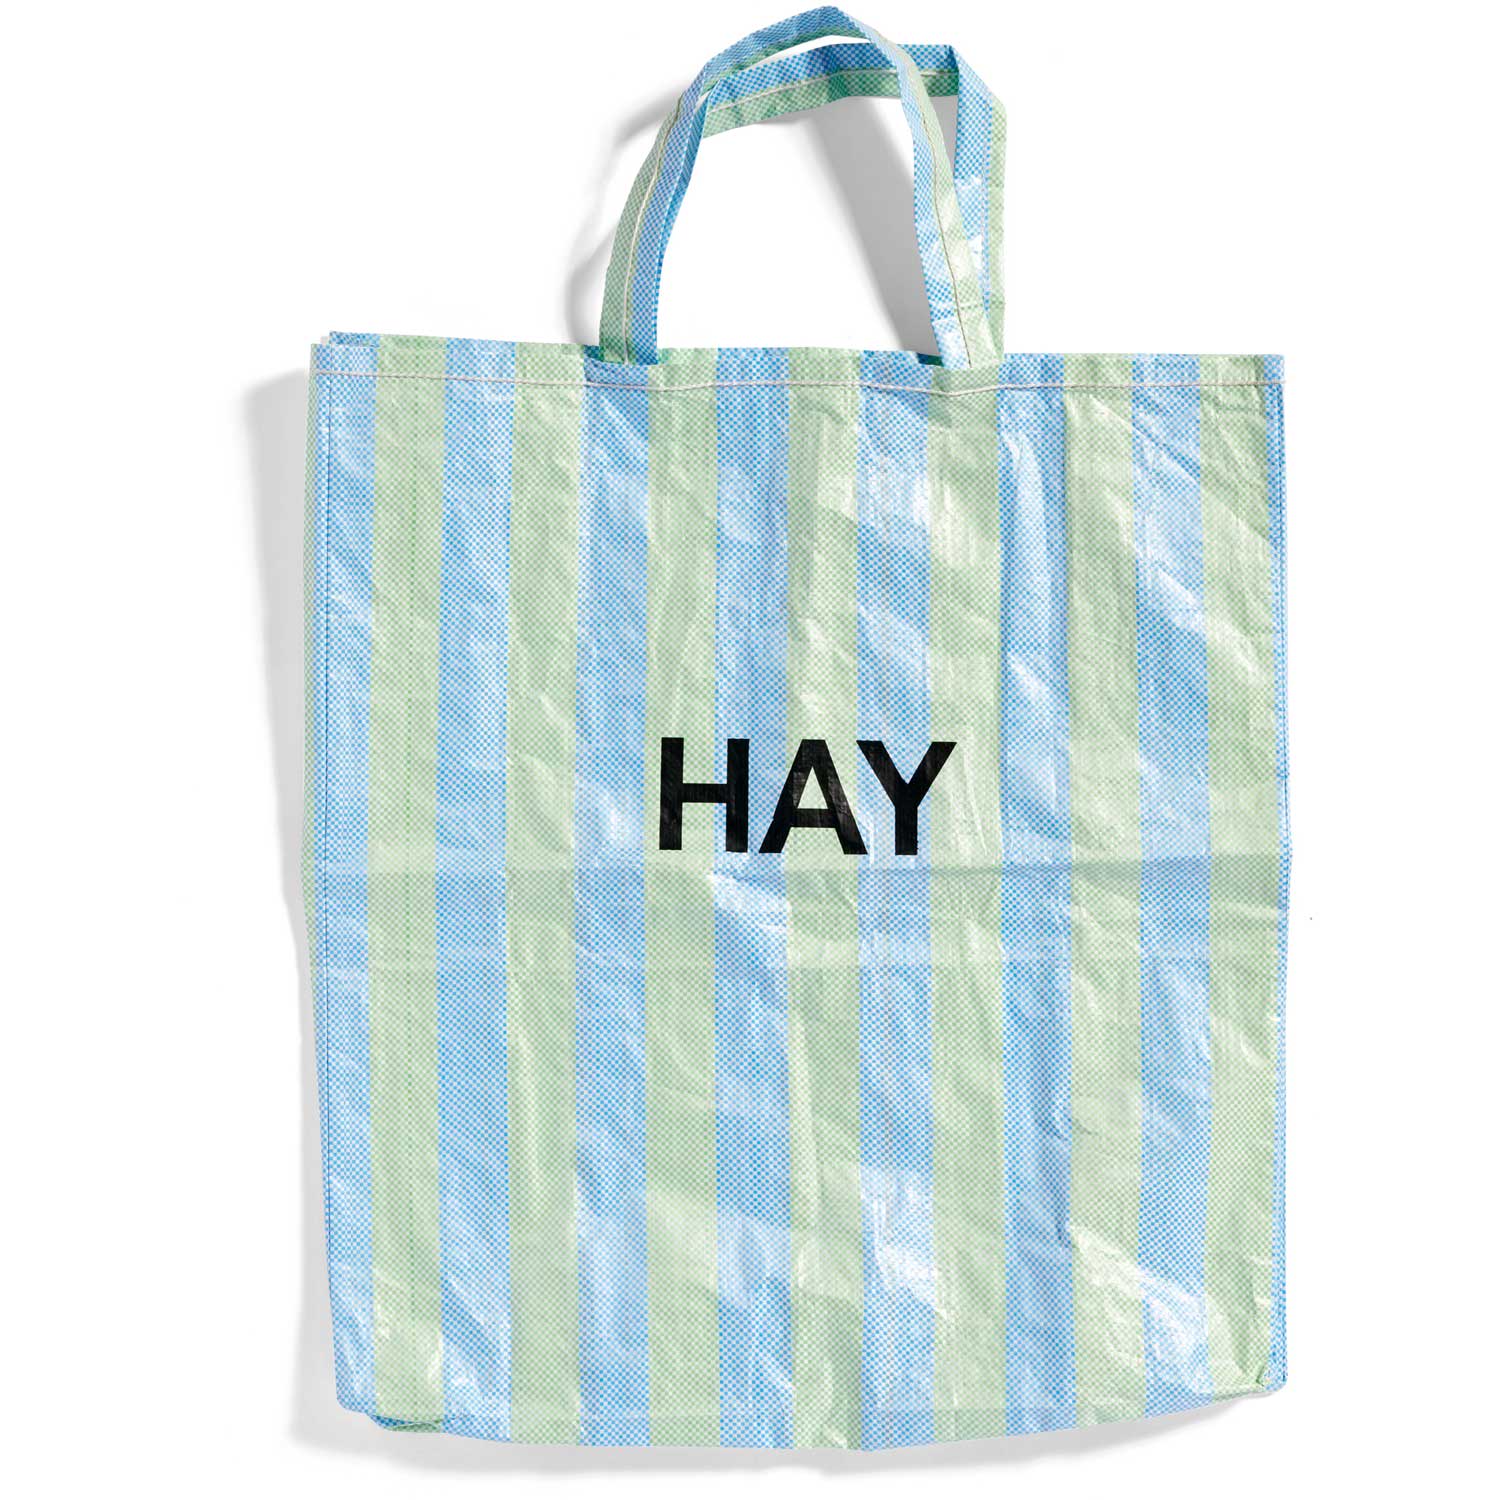 Recycled Candy Stripe Taske Blå Grøn, h:70 cm - Hay @ RoyalDesign.dk